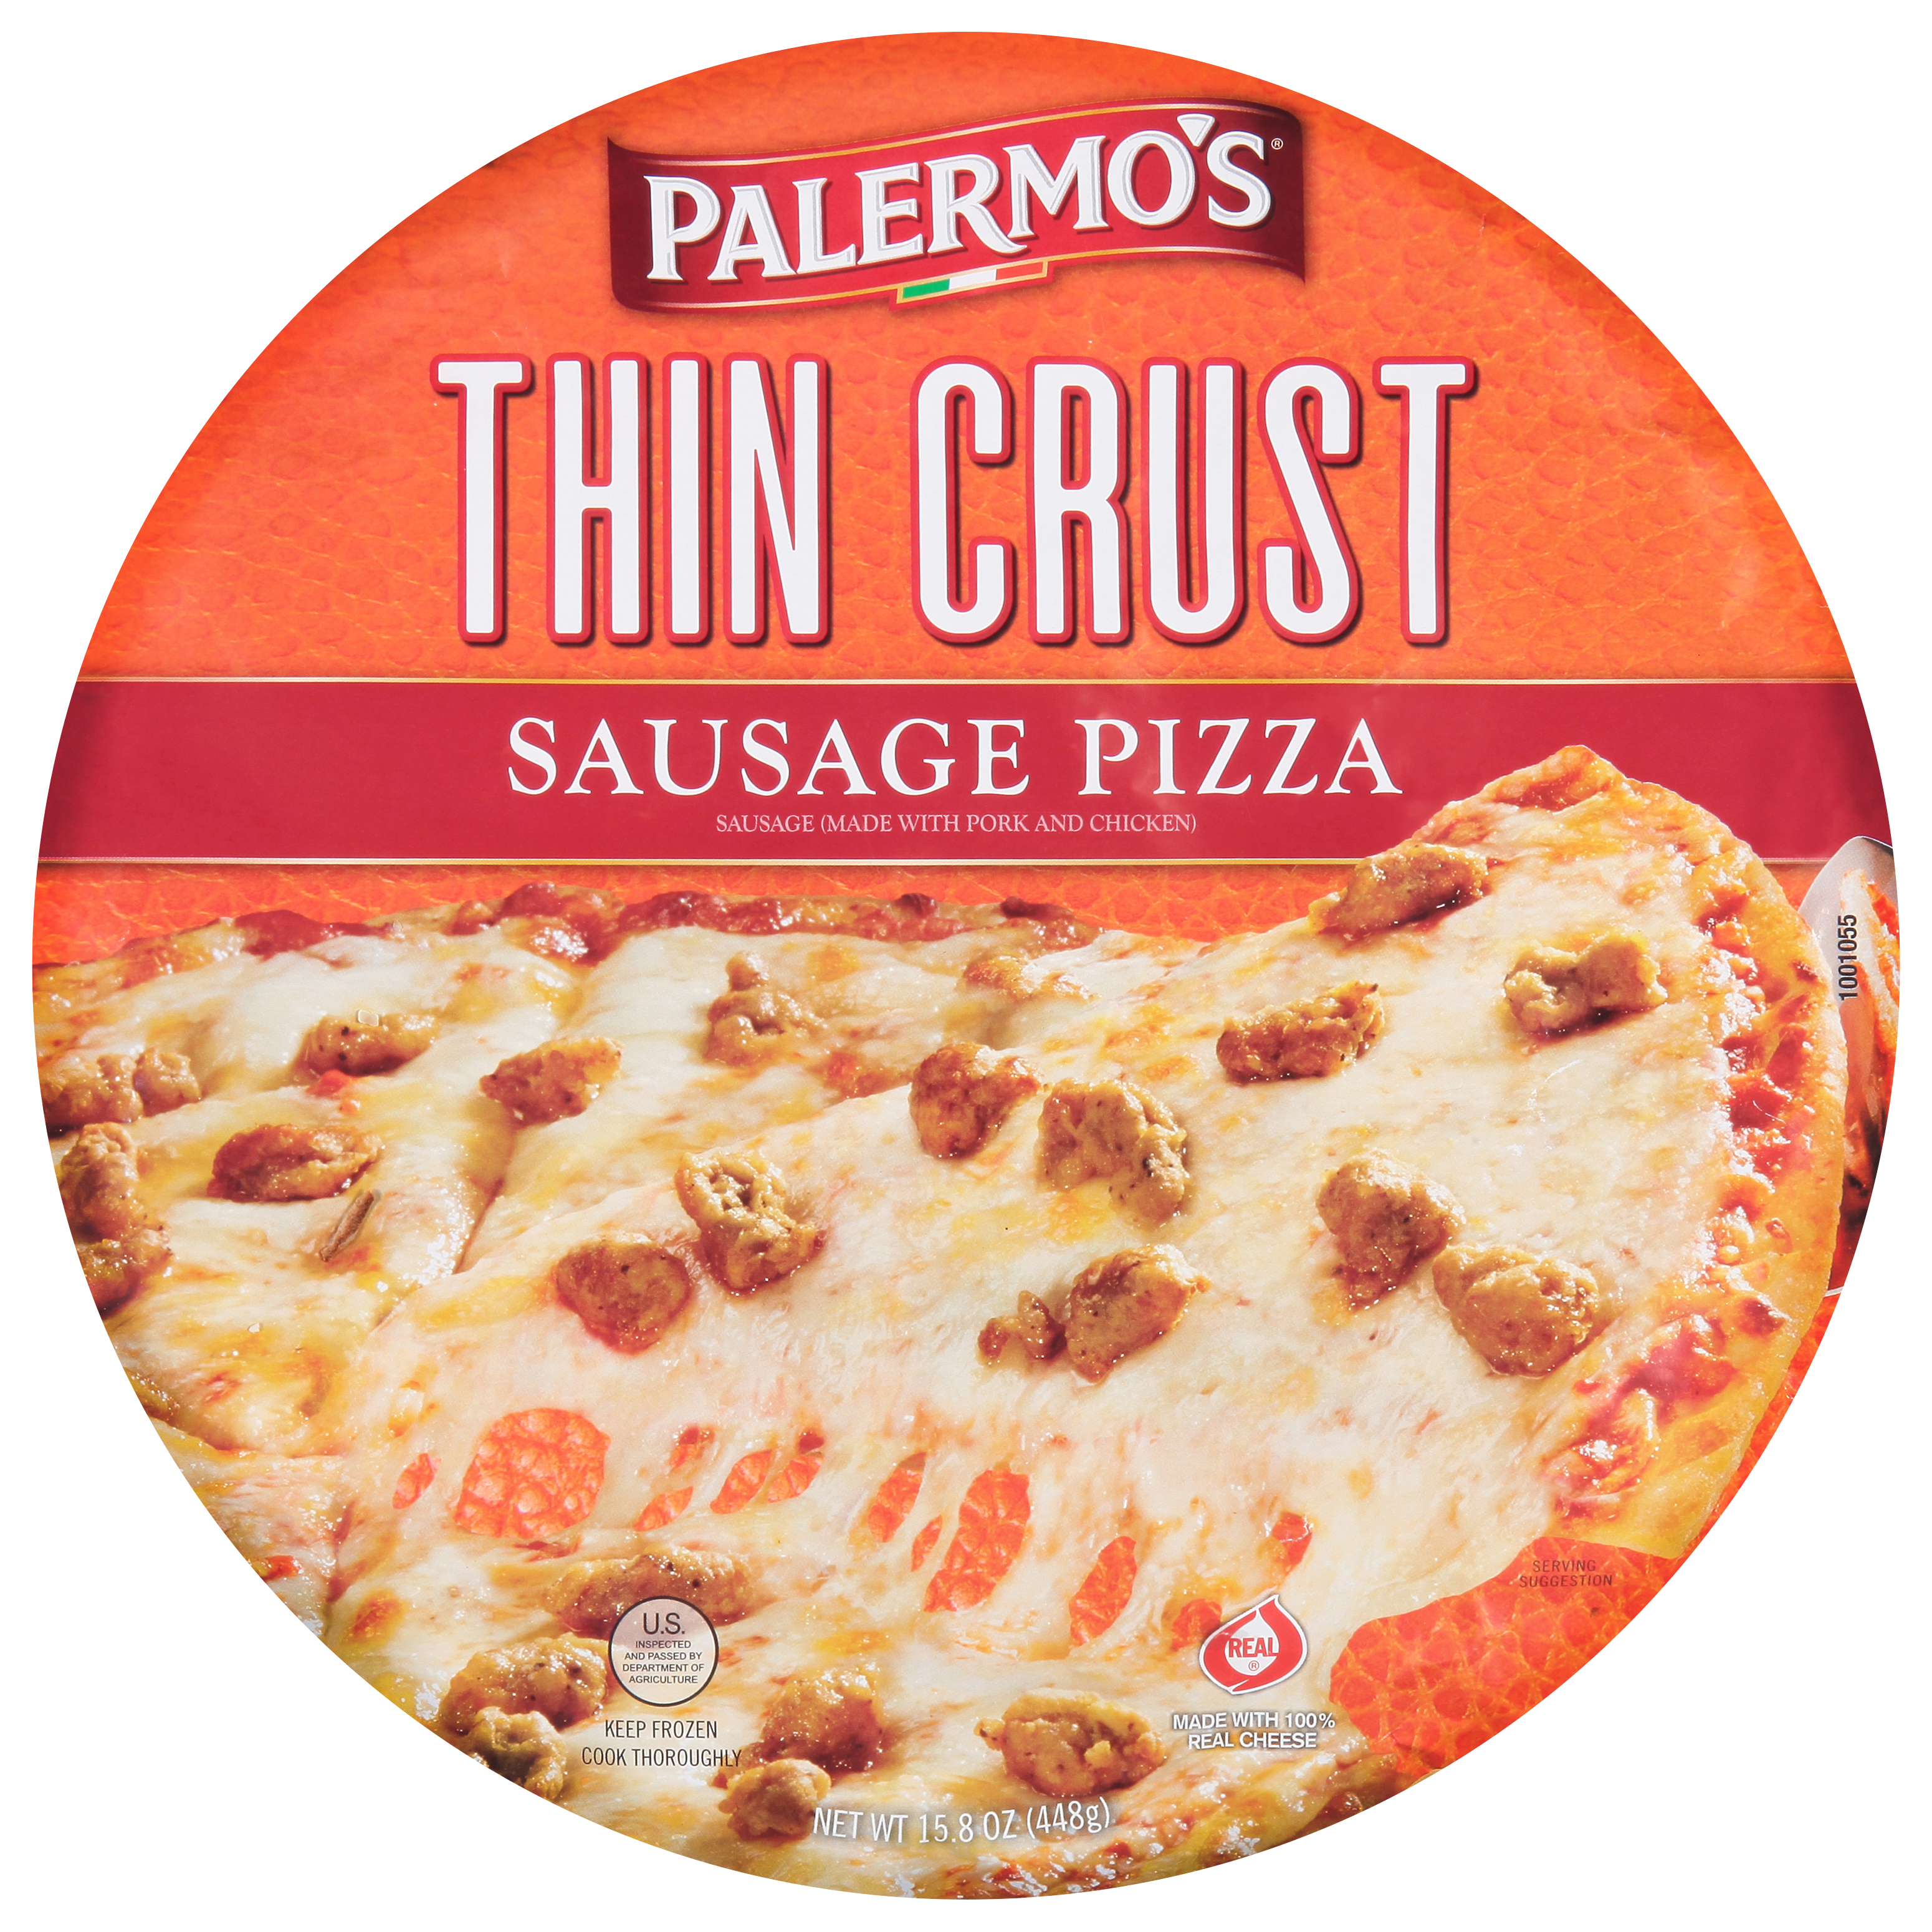 Palermo's Thin Crust Sausage Pizza 12 units per case 15.8 oz